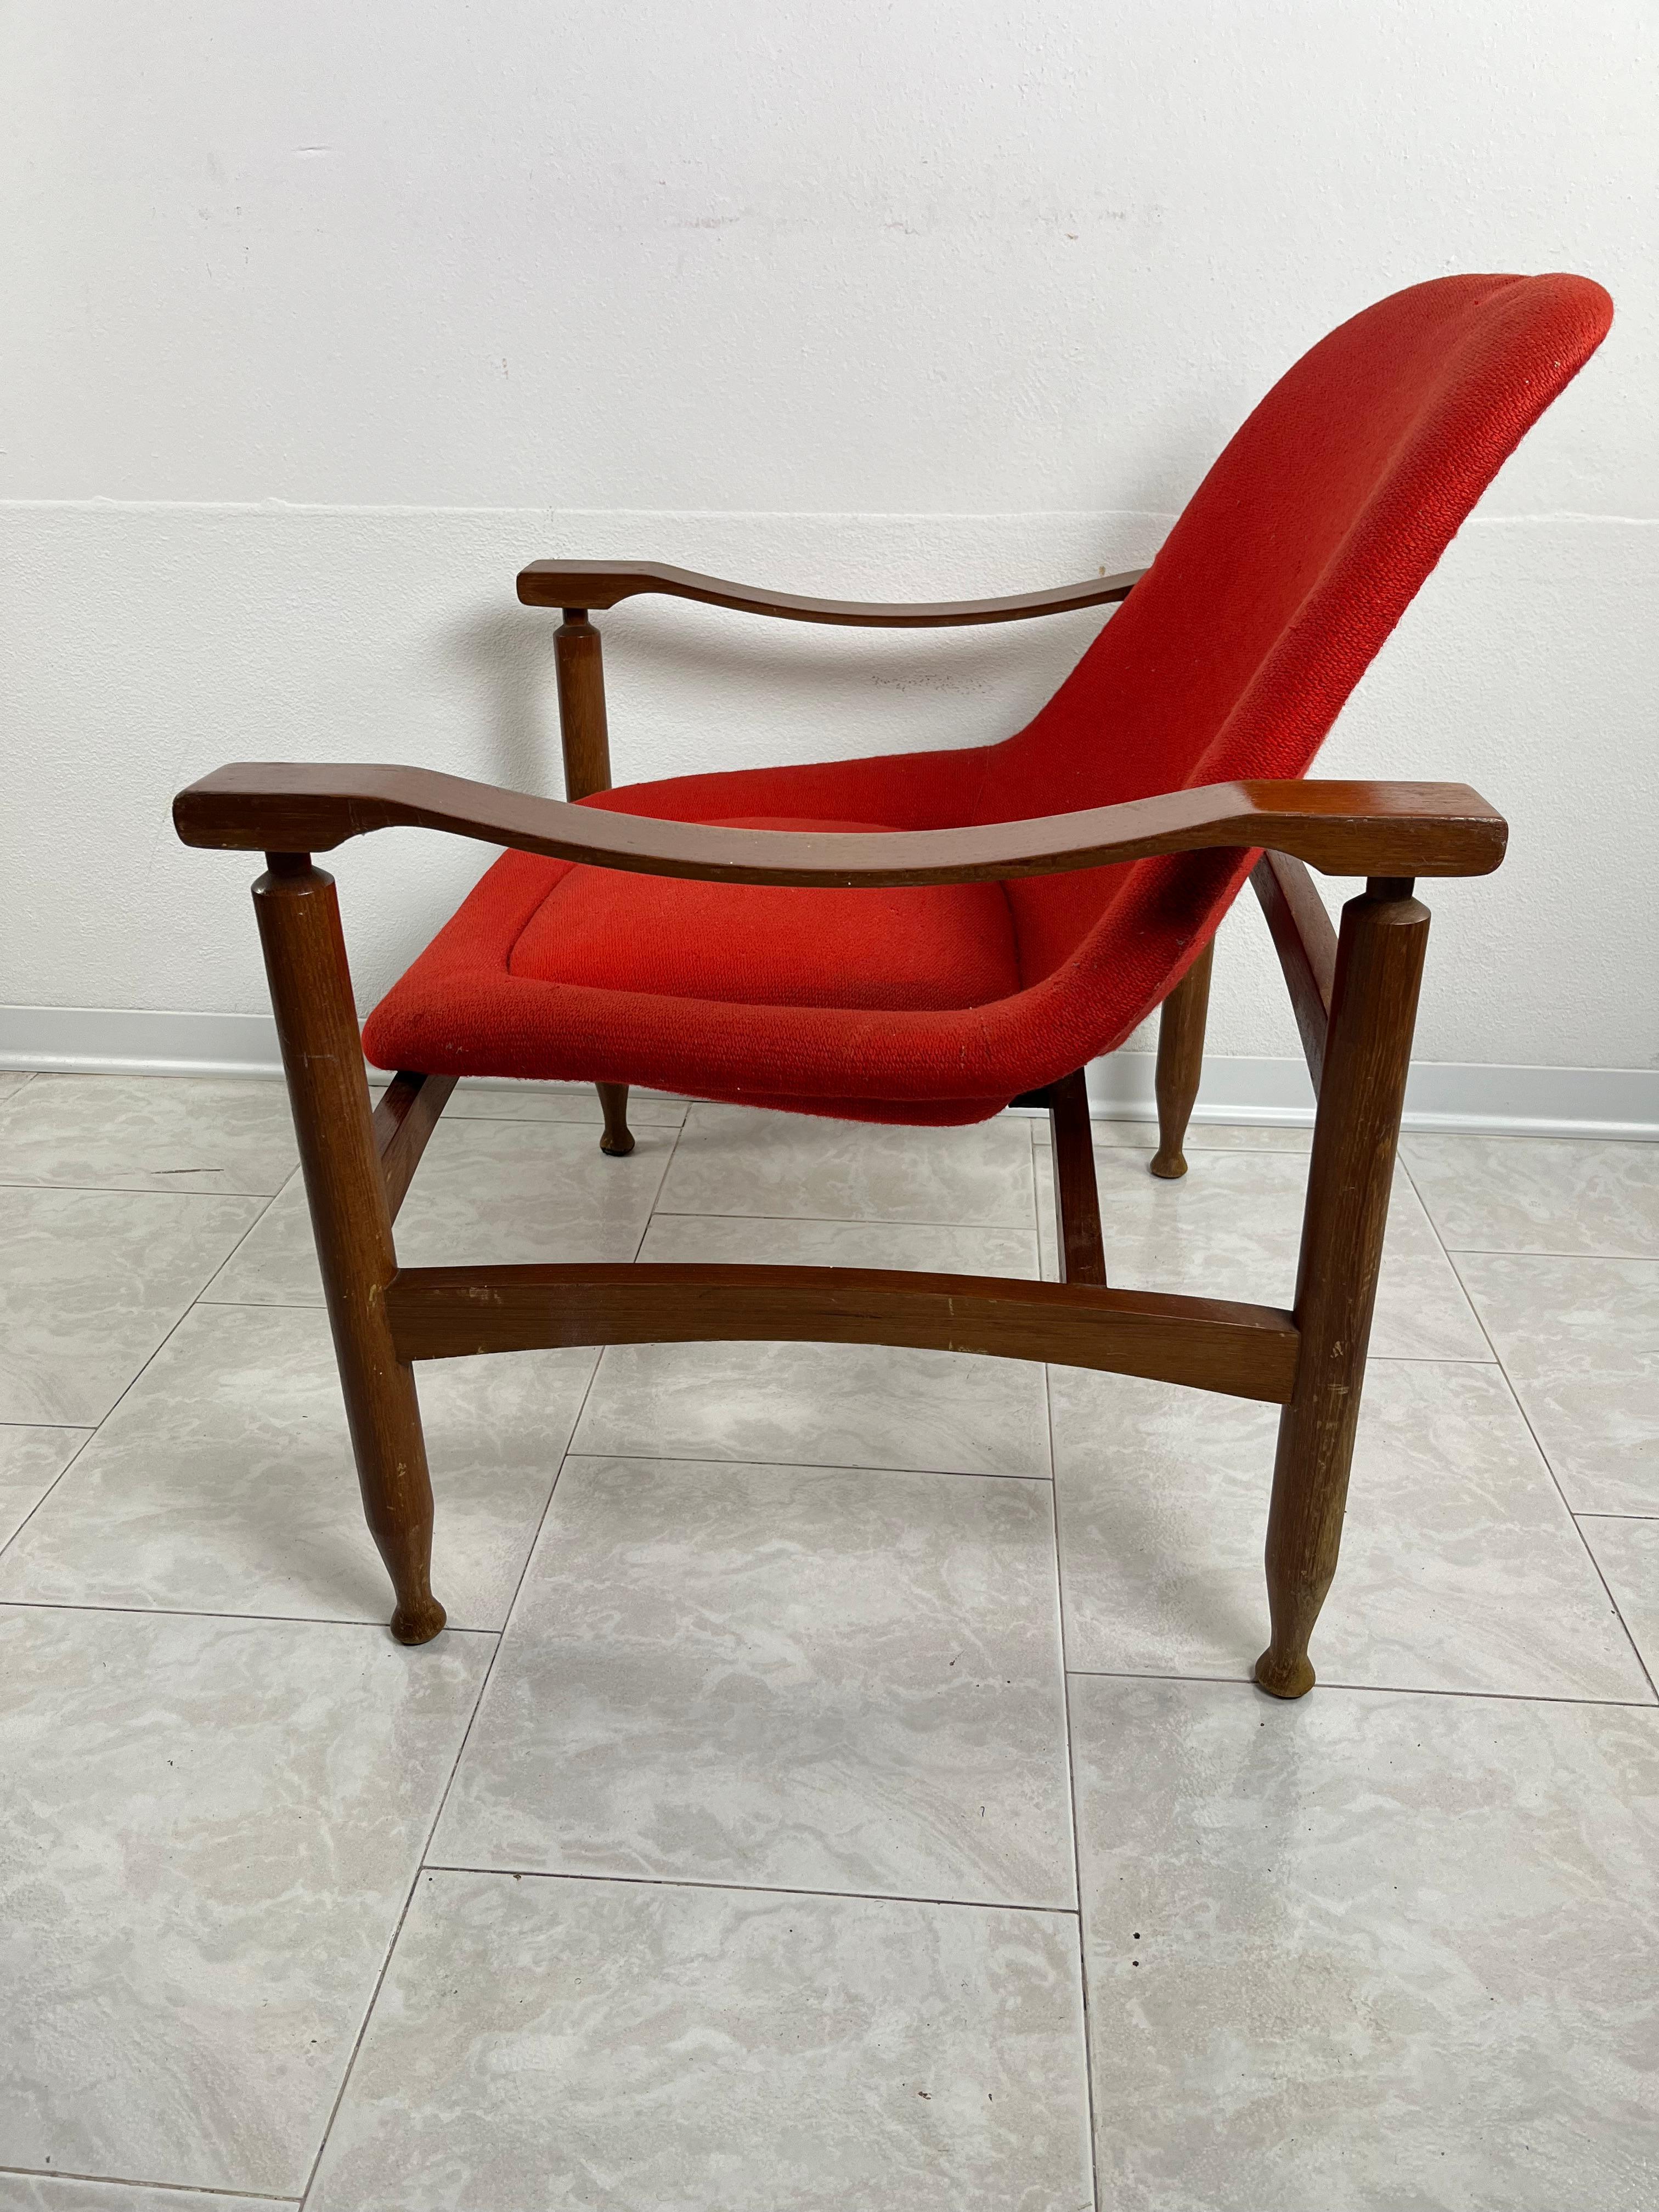 Busnelli Sessel Mitte des Jahrhunderts Italienisches Design 1950er Jahre
Intakt und in gutem Zustand, geringe Alterungsspuren. Es gehörte dem Vater eines berühmten Innenarchitekten in meiner Stadt.

Busnelli.
Die Geschichte der Busnelli Industrial